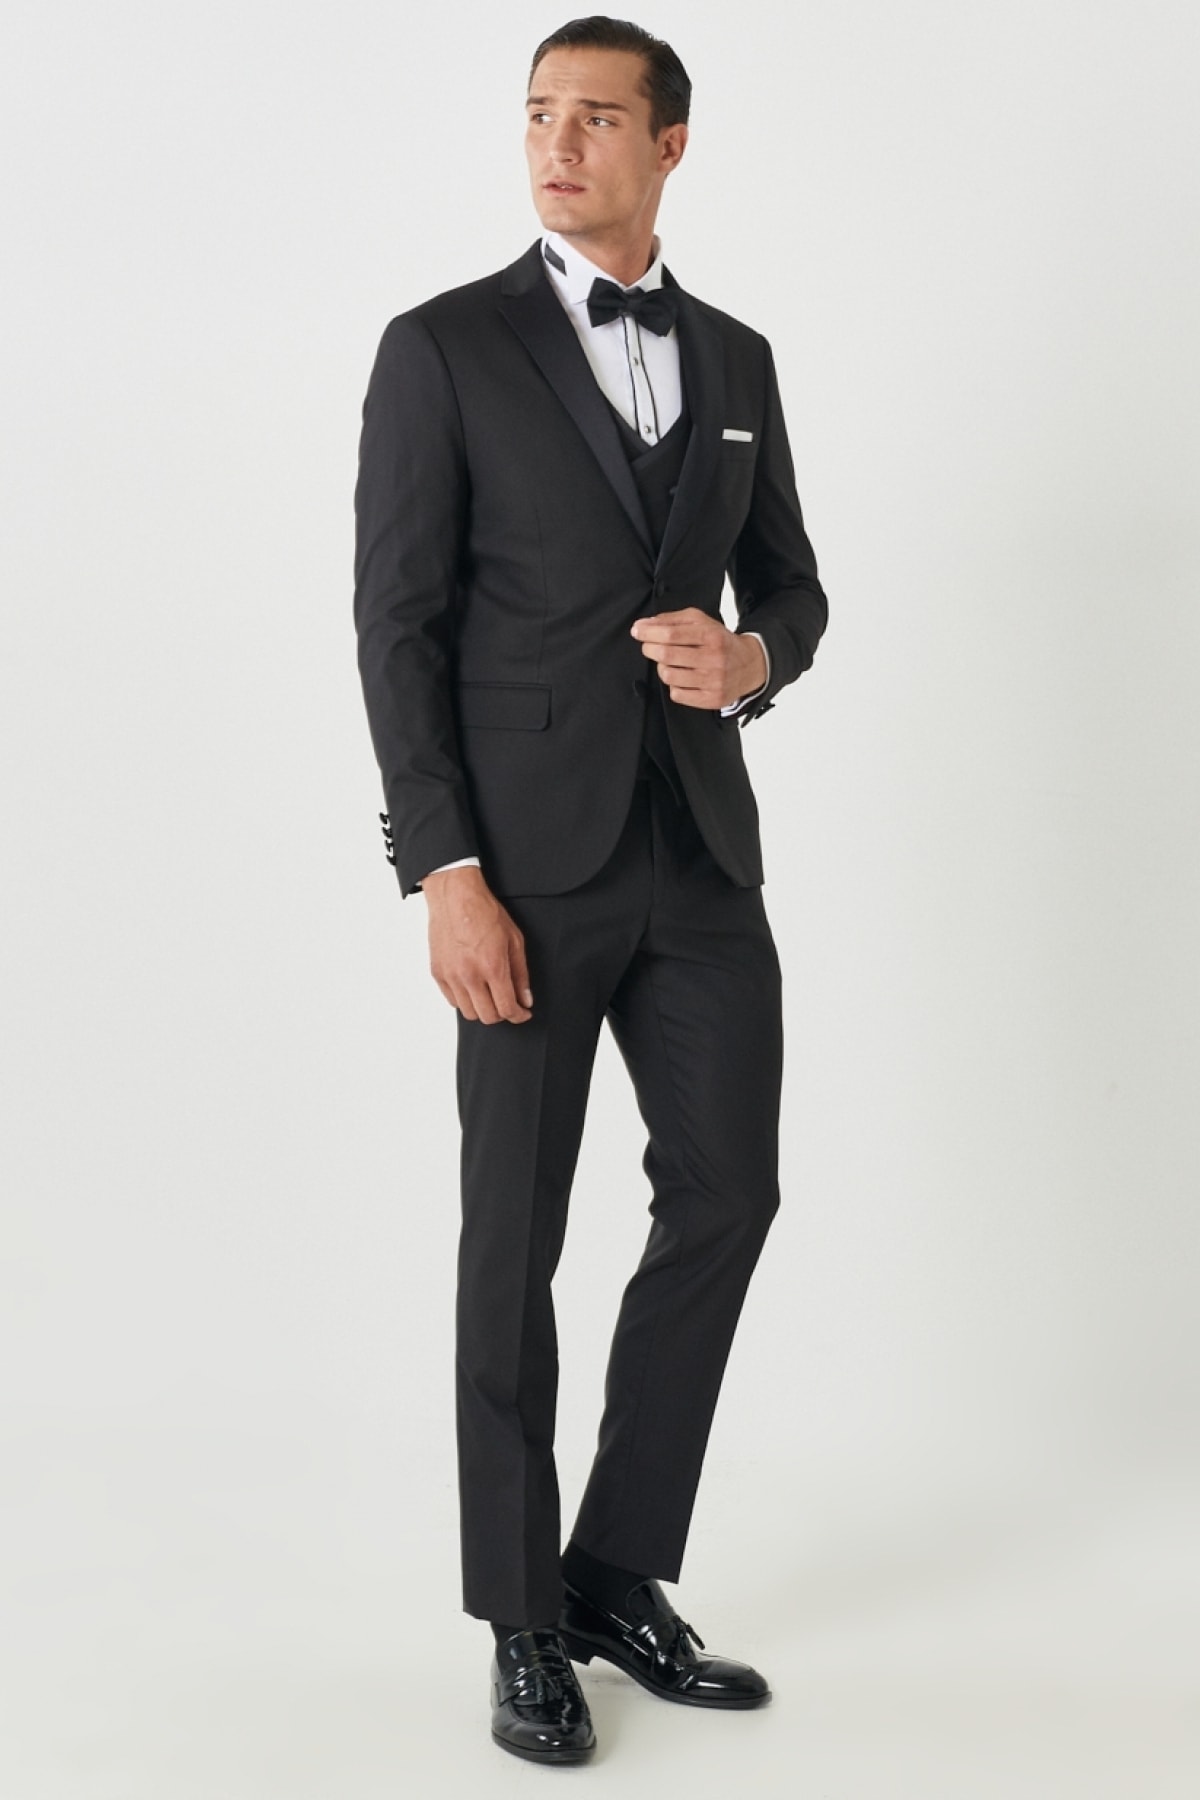 Levně ALTINYILDIZ CLASSICS Men's Black Slim Fit Slim Fit Monocollar Patterned Vest Tuxedo Suit.